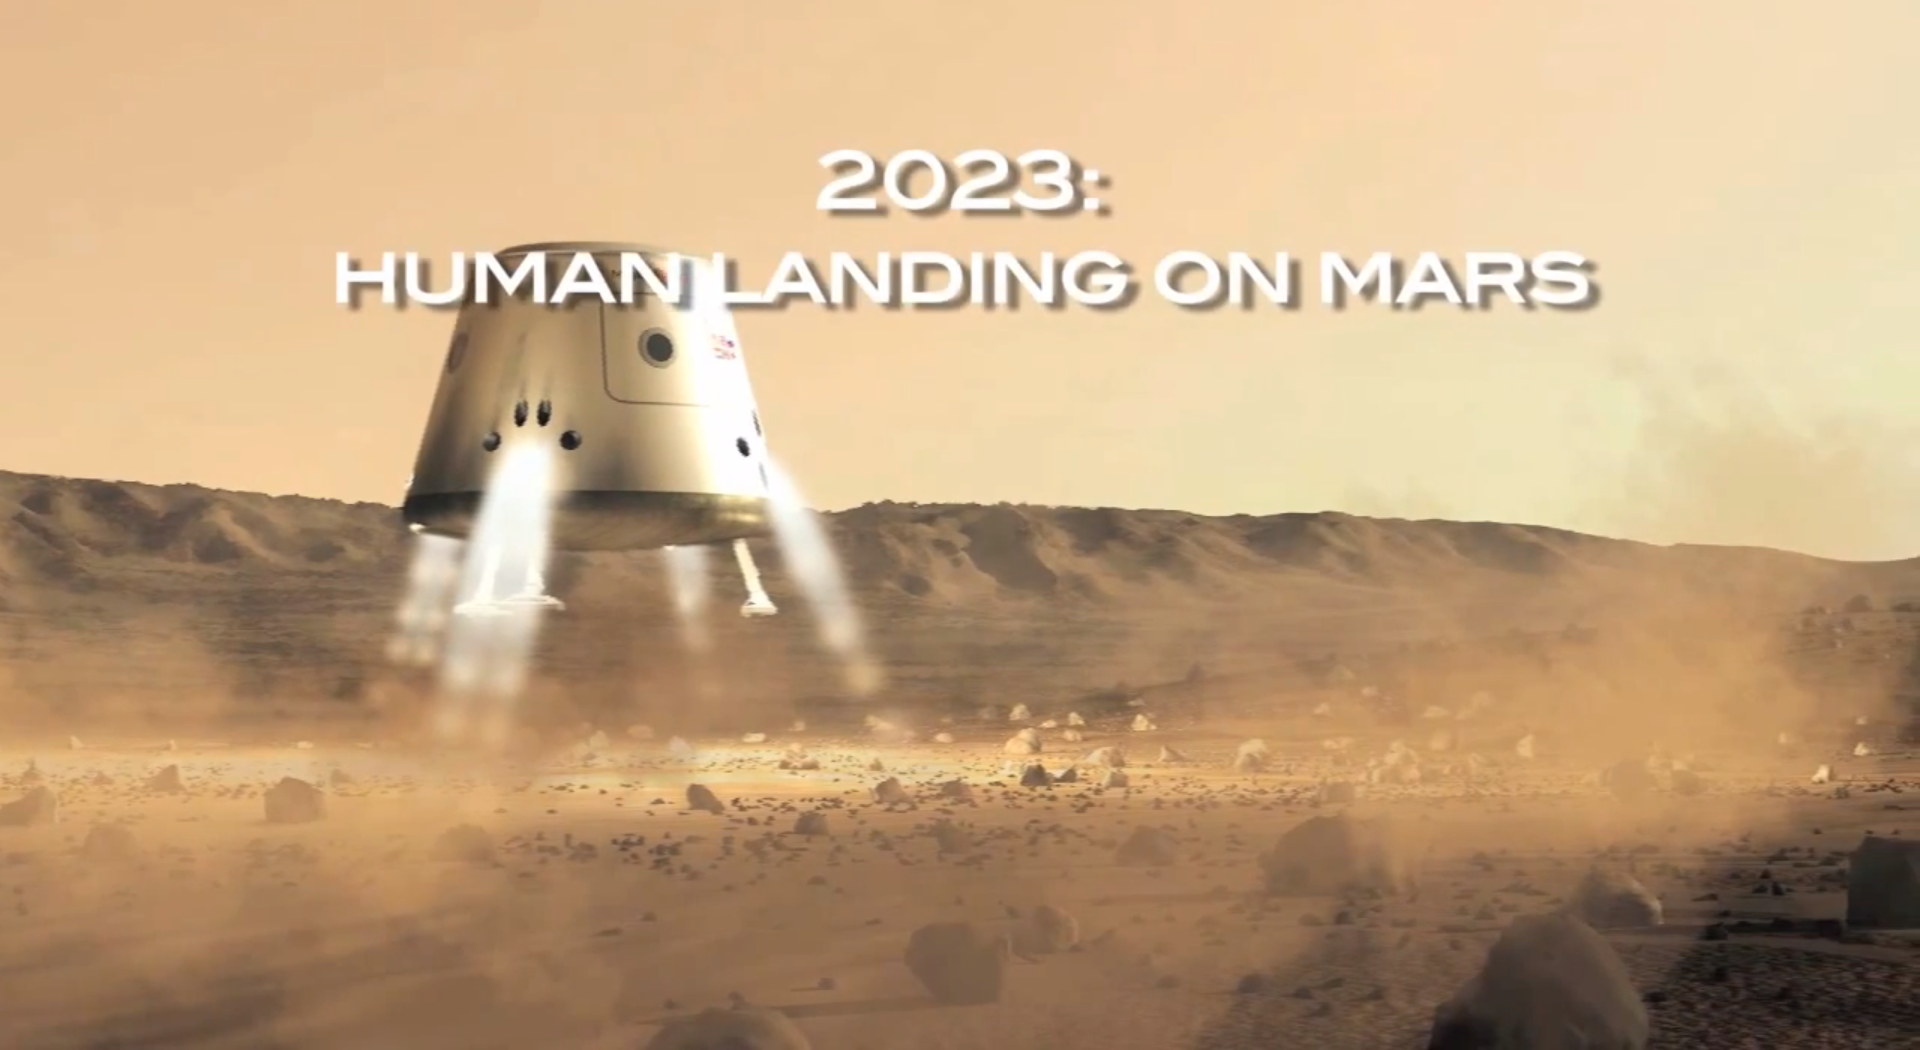 Så här kommer det se ut när människan landar på Mars, enligt Mars One.